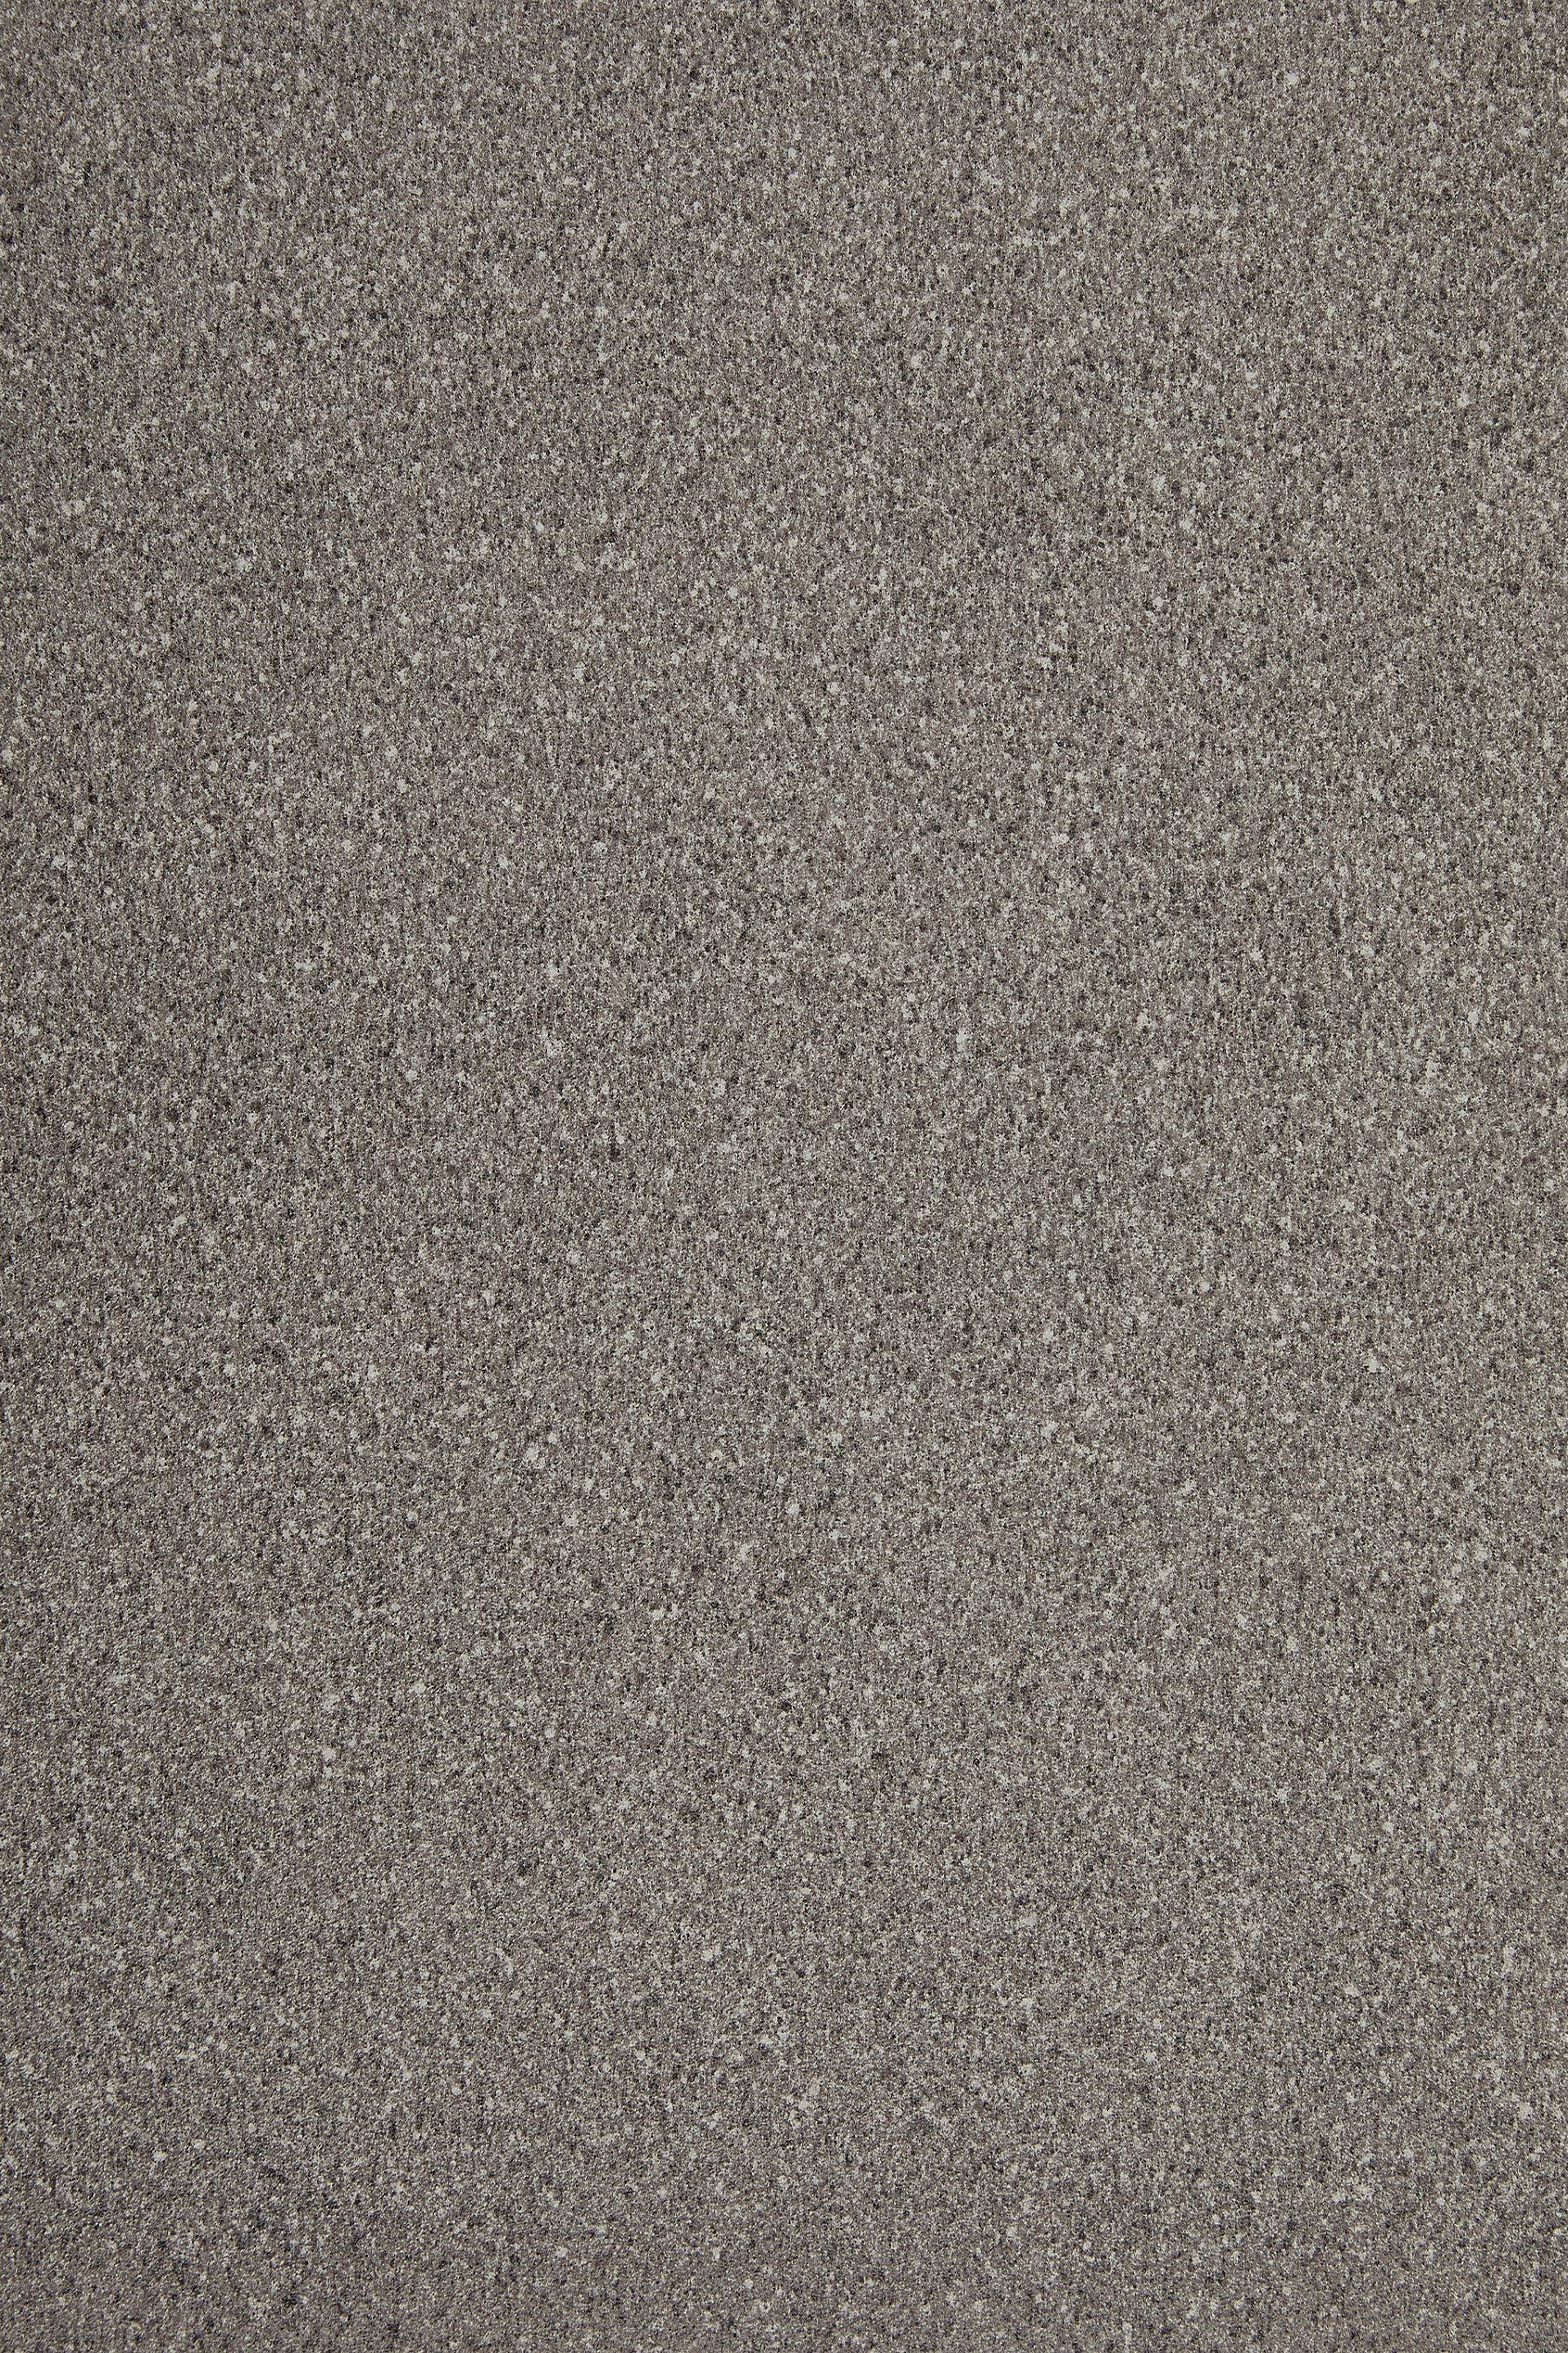 Andiamo Vinylboden Fliesen- und Steinoptik, PVC Bodenbelag Meterware Breite 200 cm oder 400 cm, Stärke 2,8 mm anthrazit